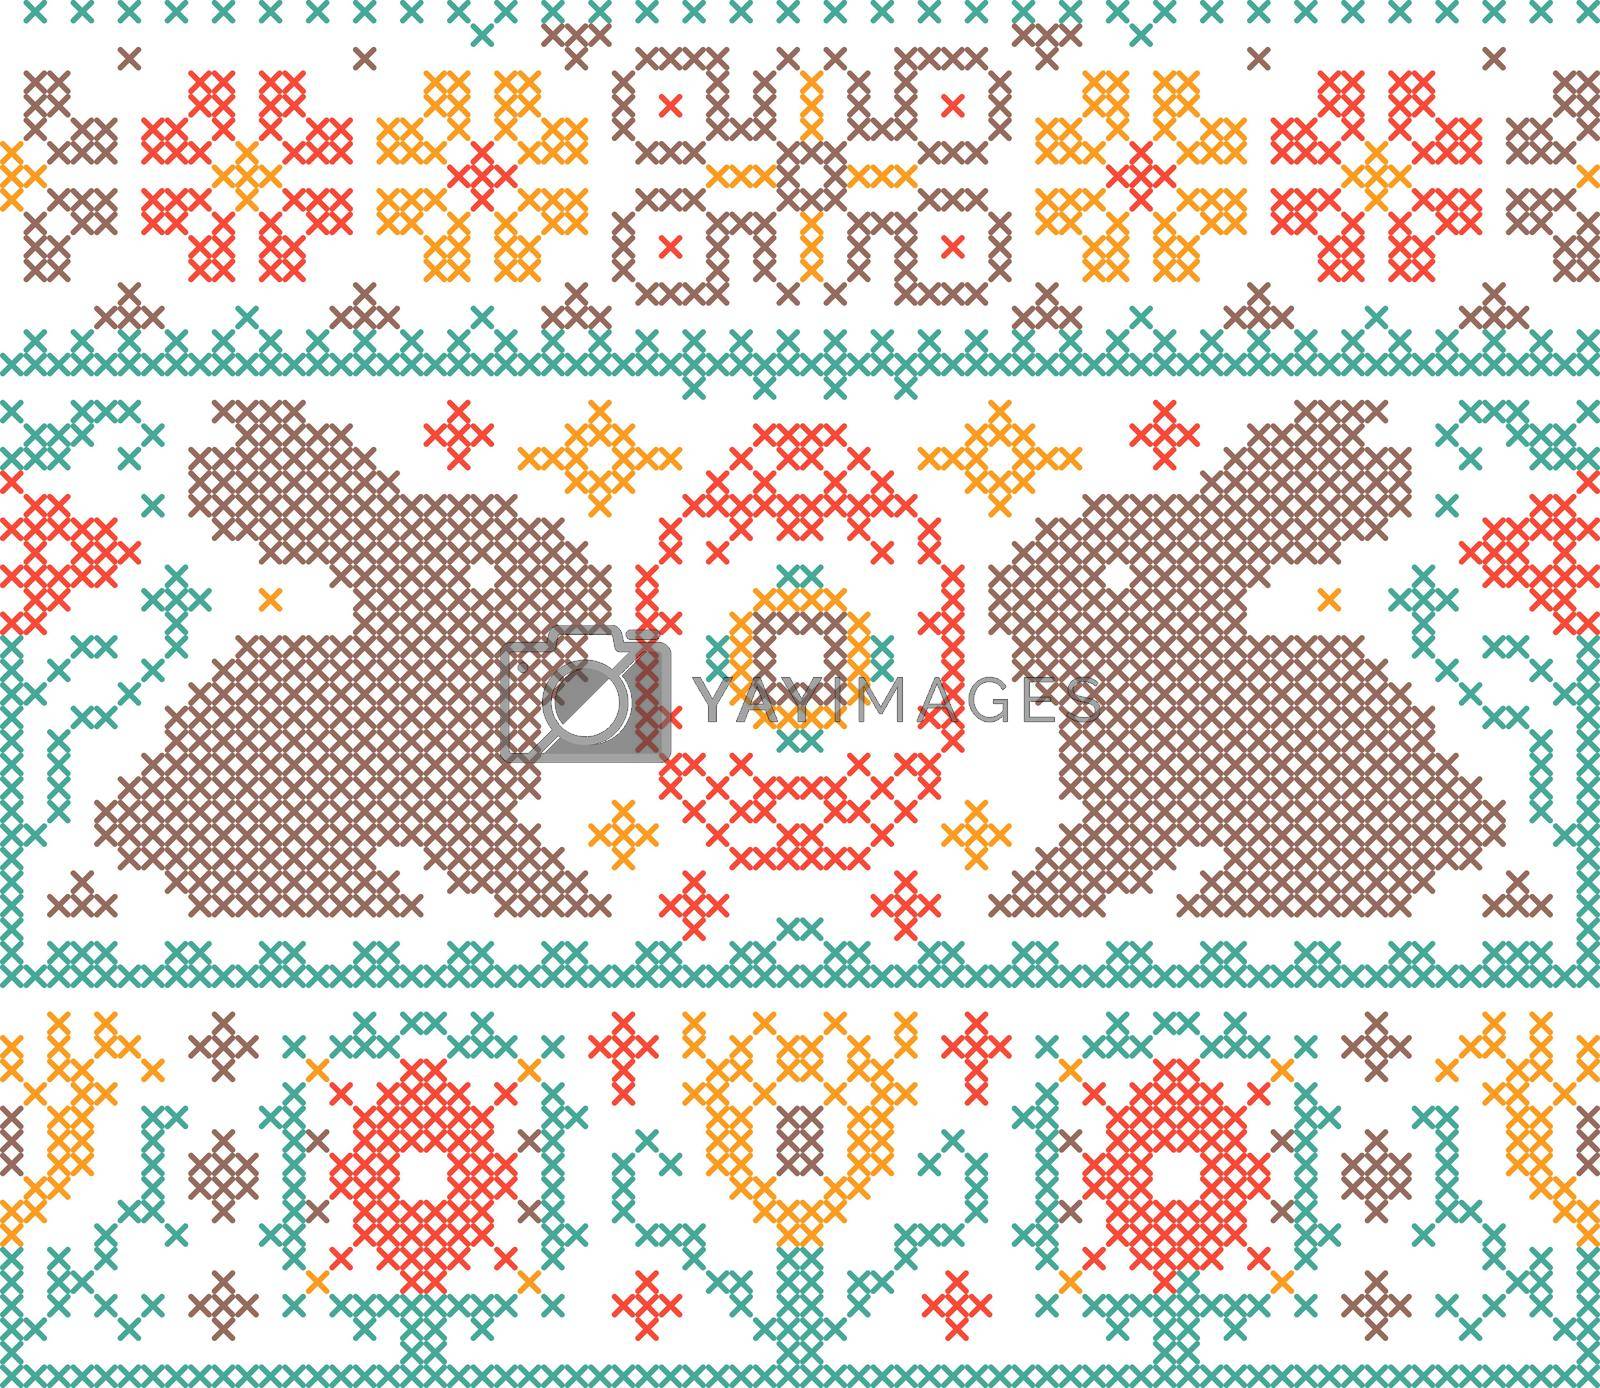 Royalty free image of Cross stitch embroidery pattern by kiyanochka